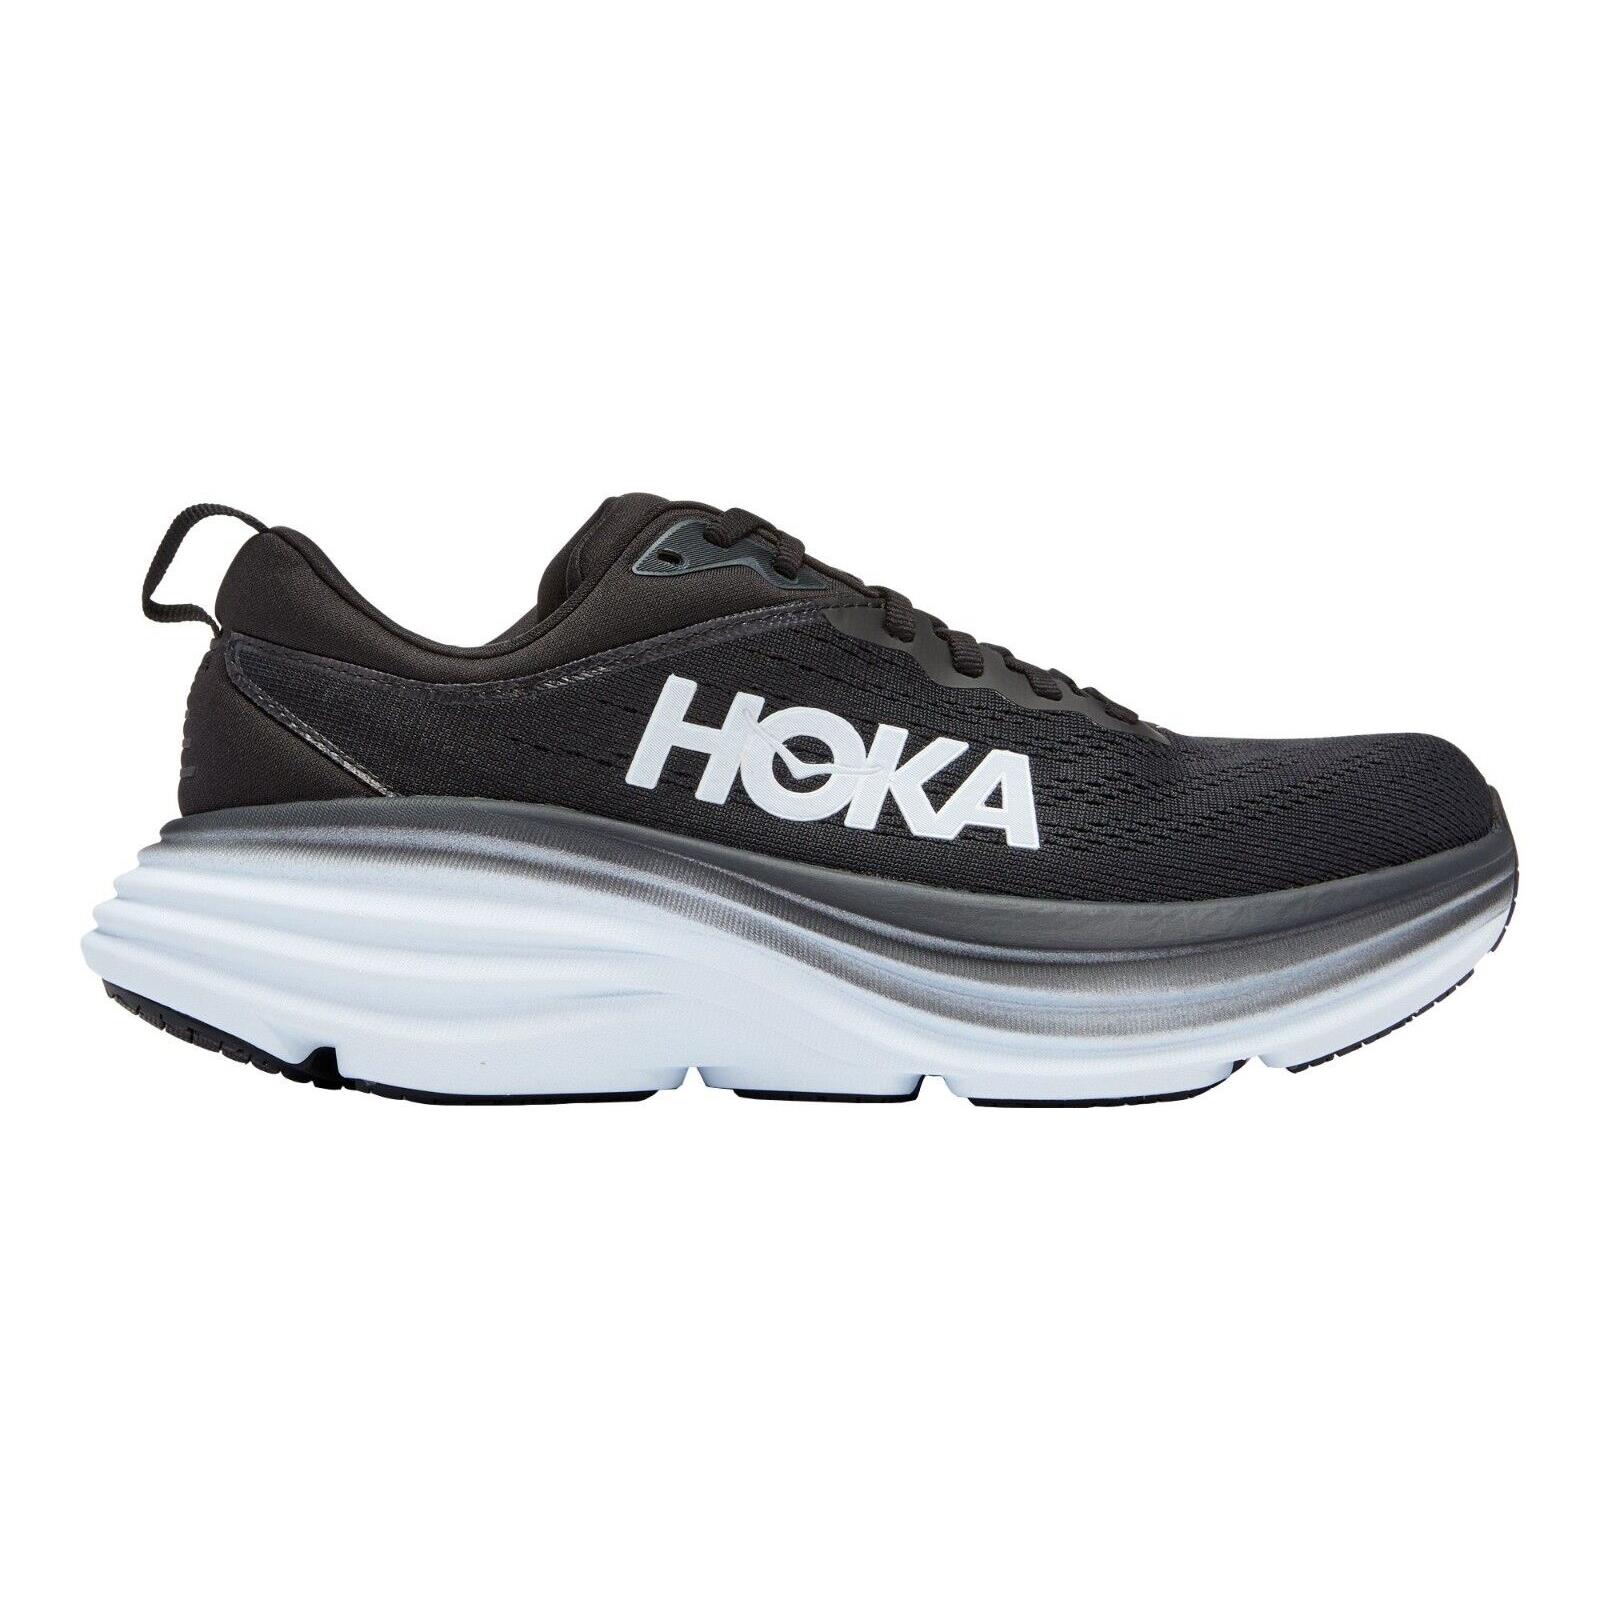 Hoka One One Bondi 8 Running Shoes Women`s US Sizes 6-12 Colors Available Black / White